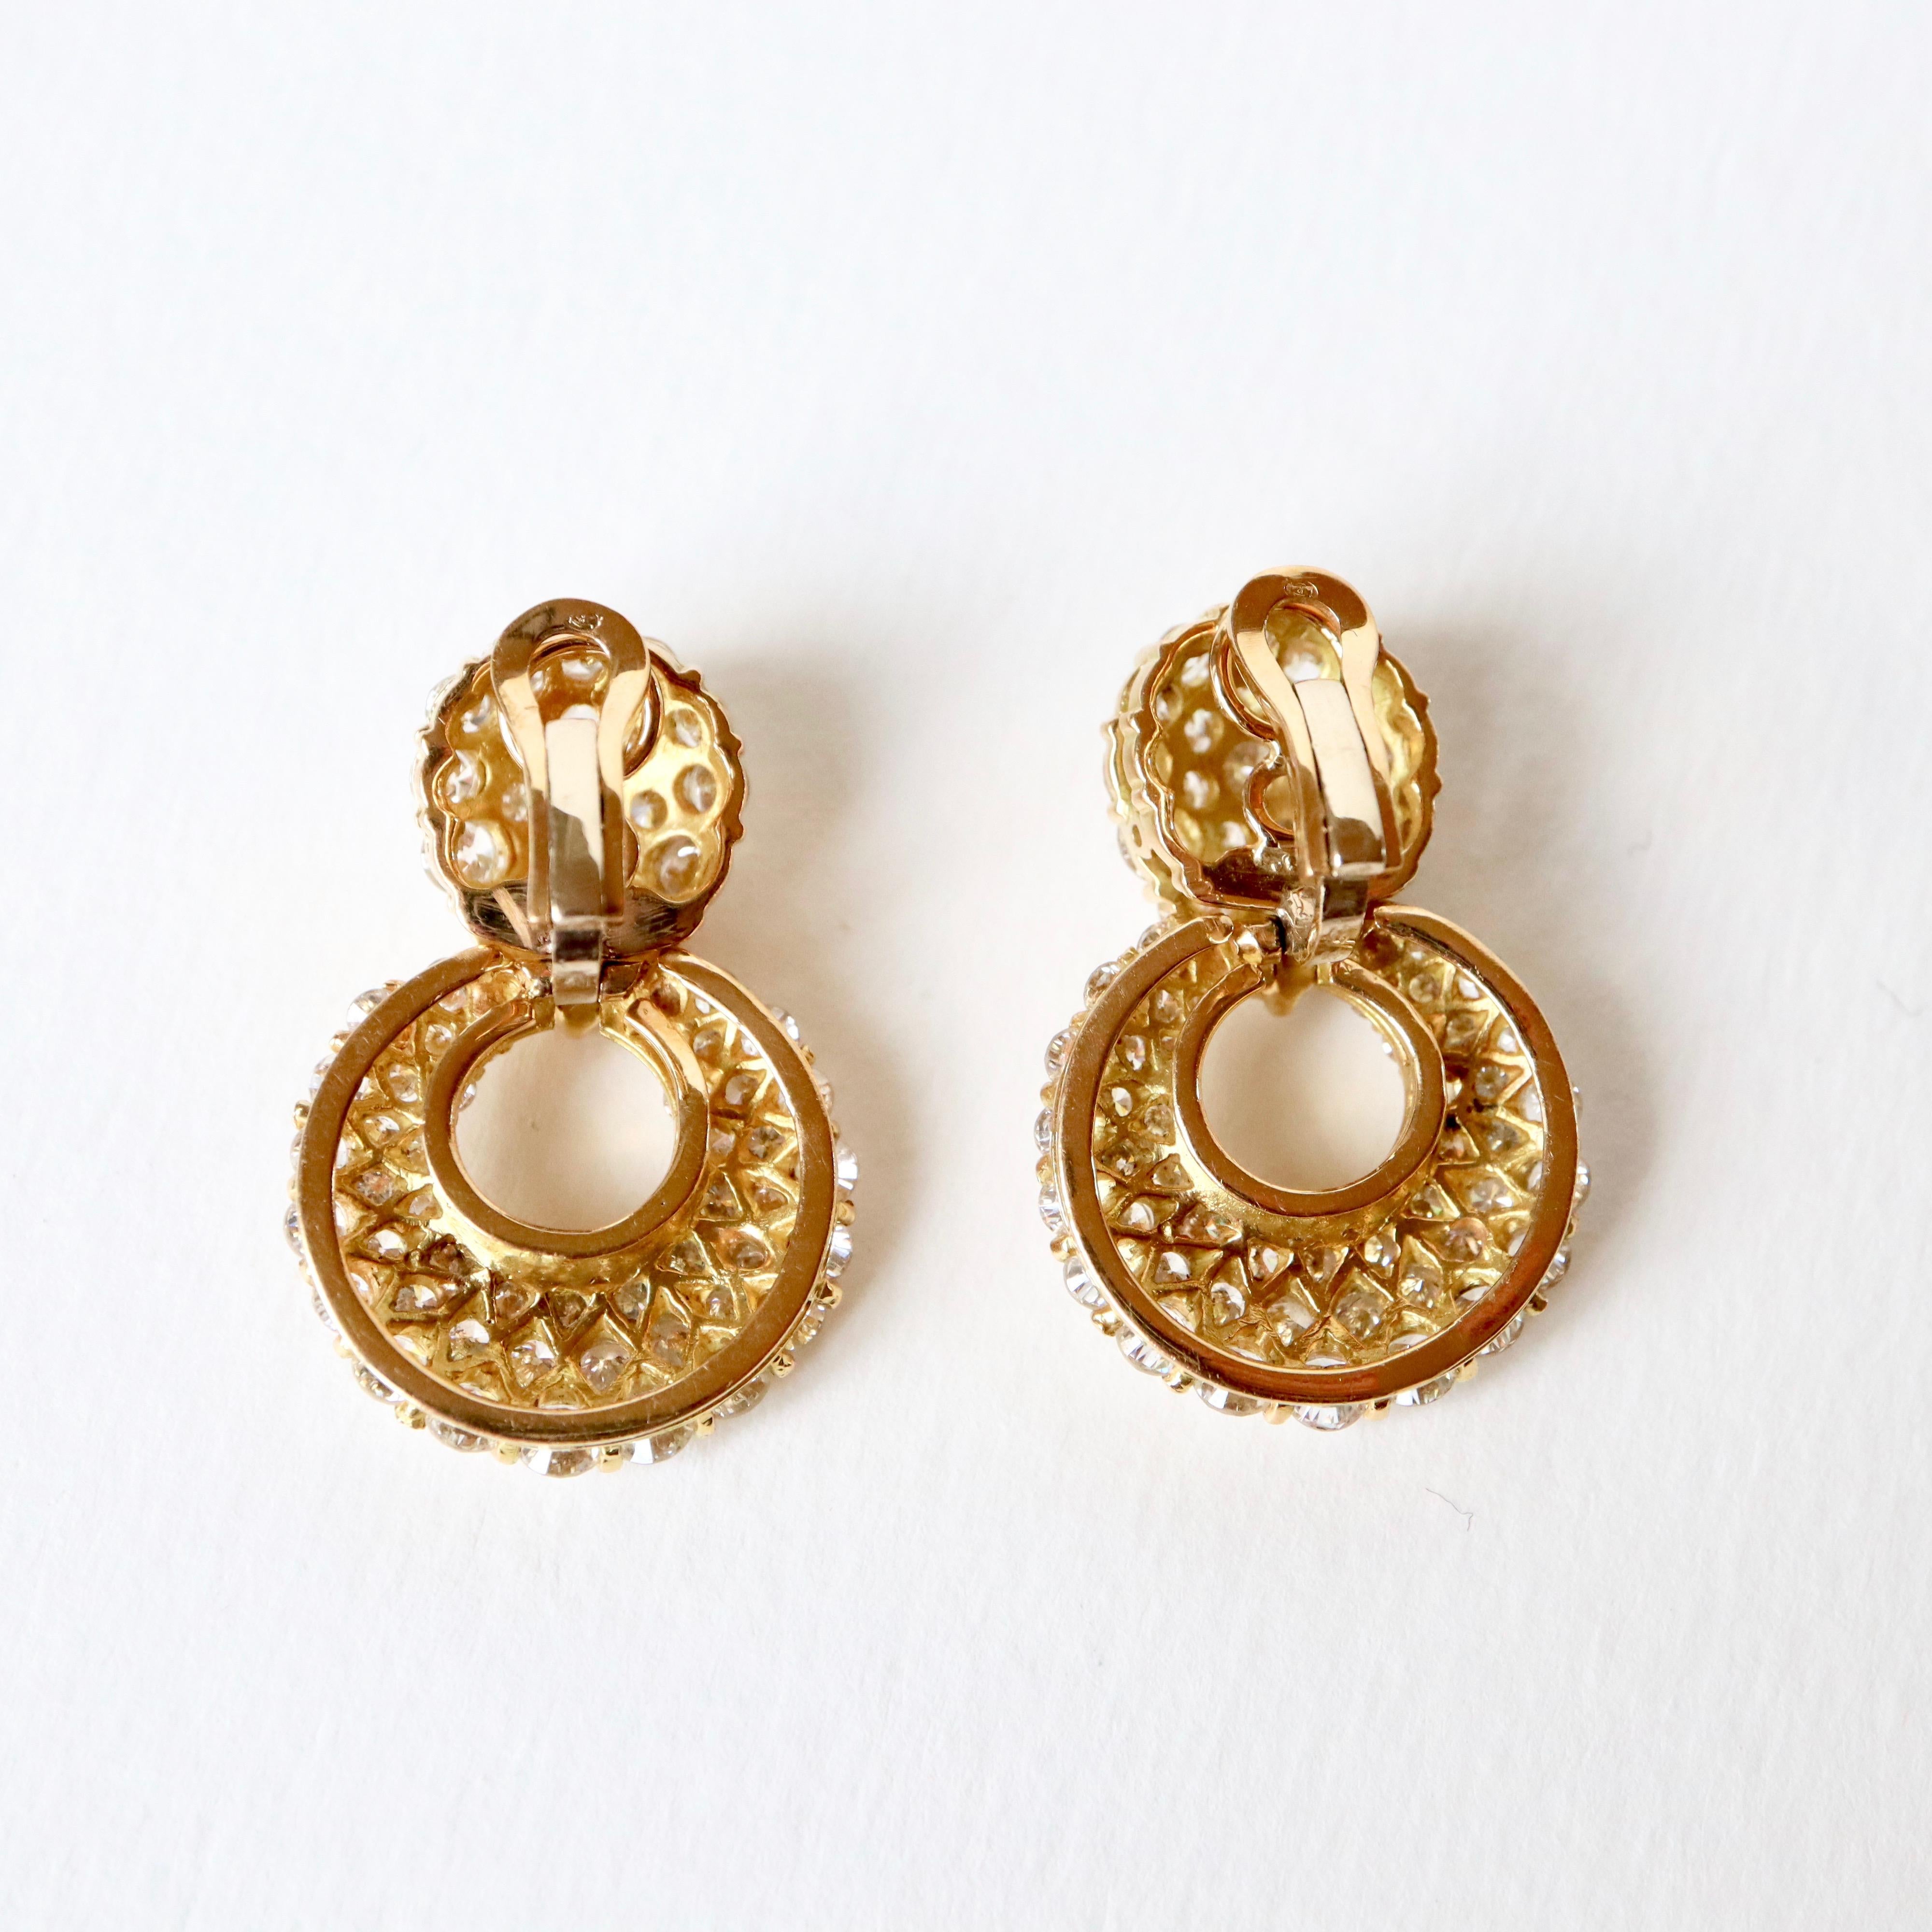 Clip-Ohrringe aus 18 Karat Gelbgold und Diamanten mit je 3 Karat Diamanten, insgesamt 6 Karat für die beiden Clips. 
Bruttogewicht: 21,9 g
Höhe 3,5 cm. Breite 2 cm 
Gold-Stempel: Eule